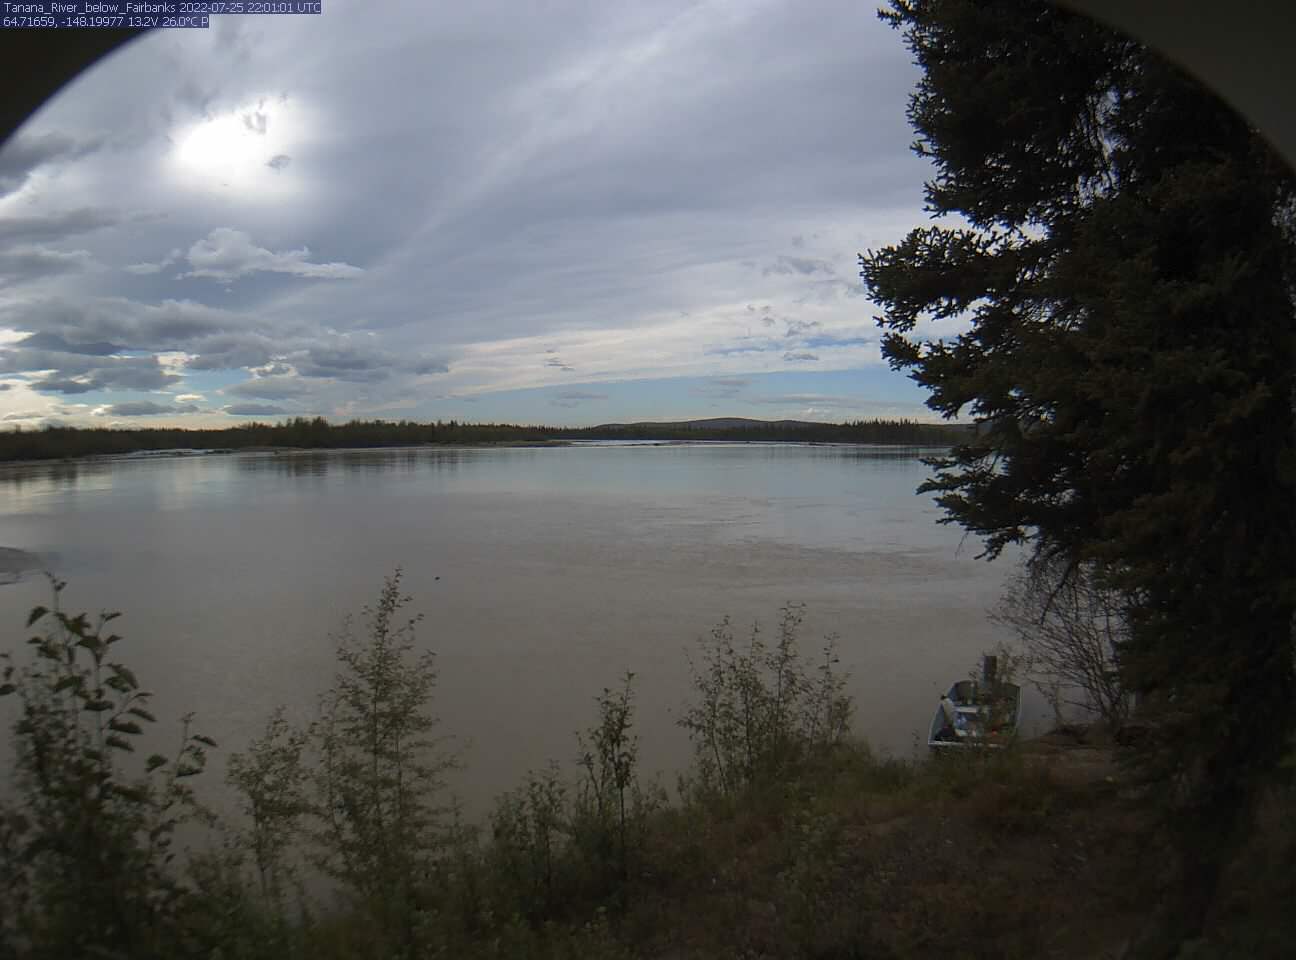 Tanana_River_below_Fairbanks_20220725220103.jpg